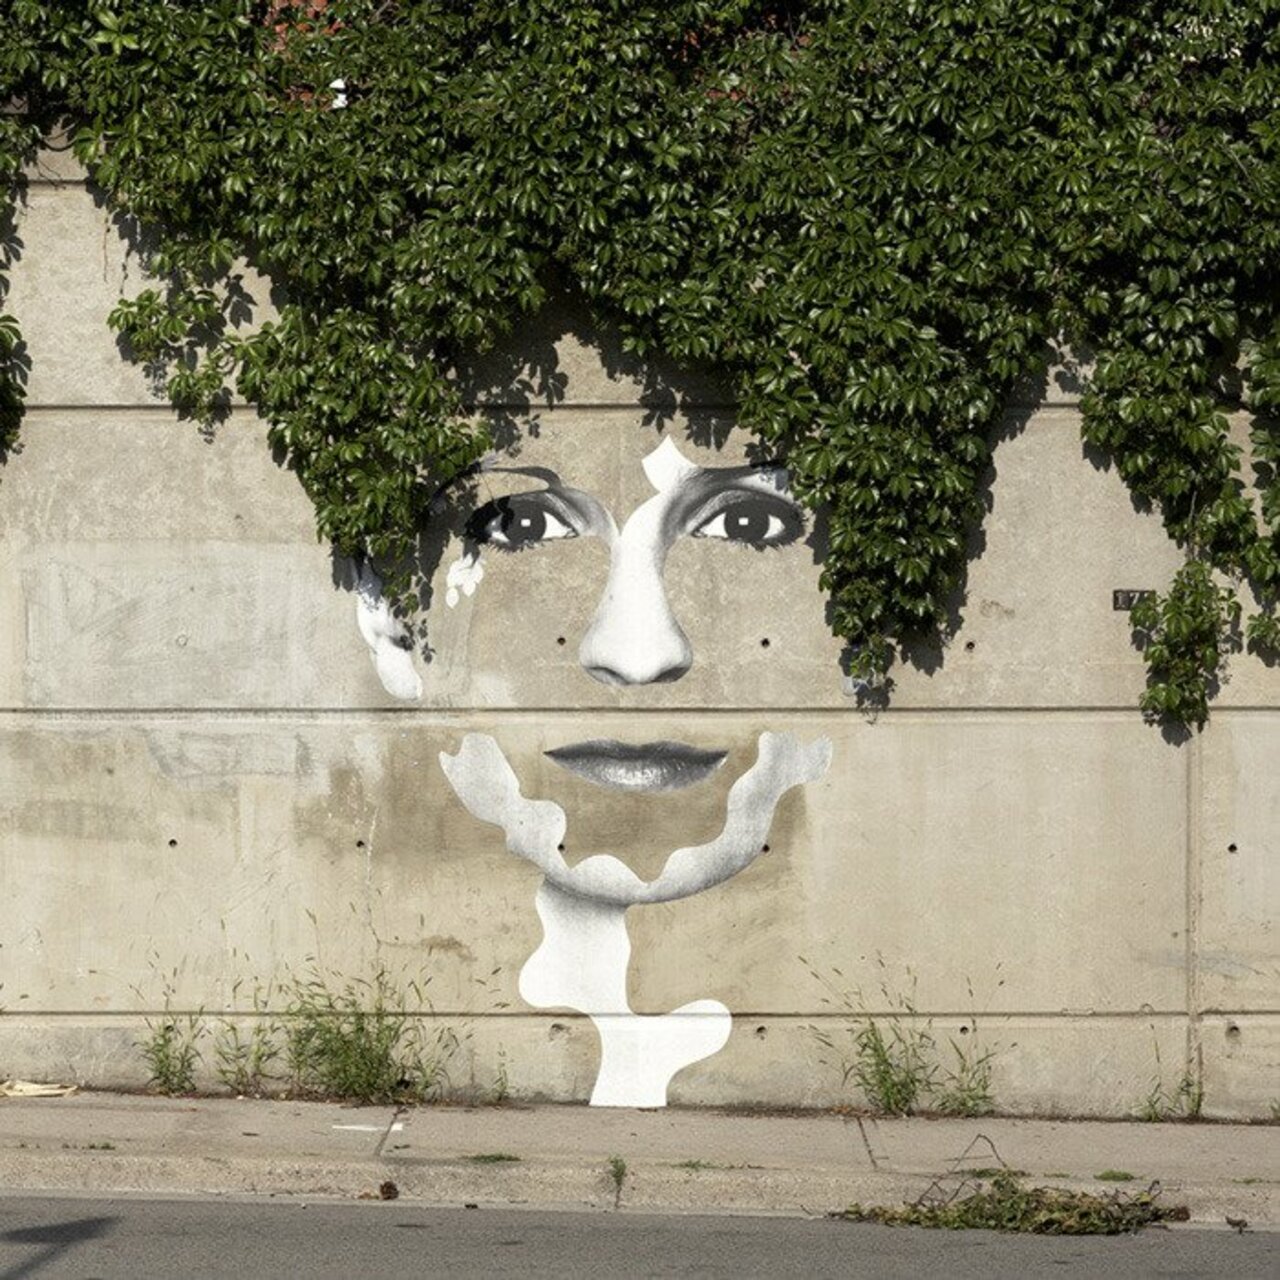 RT @KimKaosDK: StreetArt from around the World
#StreetArt #art #UrbanArt http://t.co/Aoe8MVZrJ4